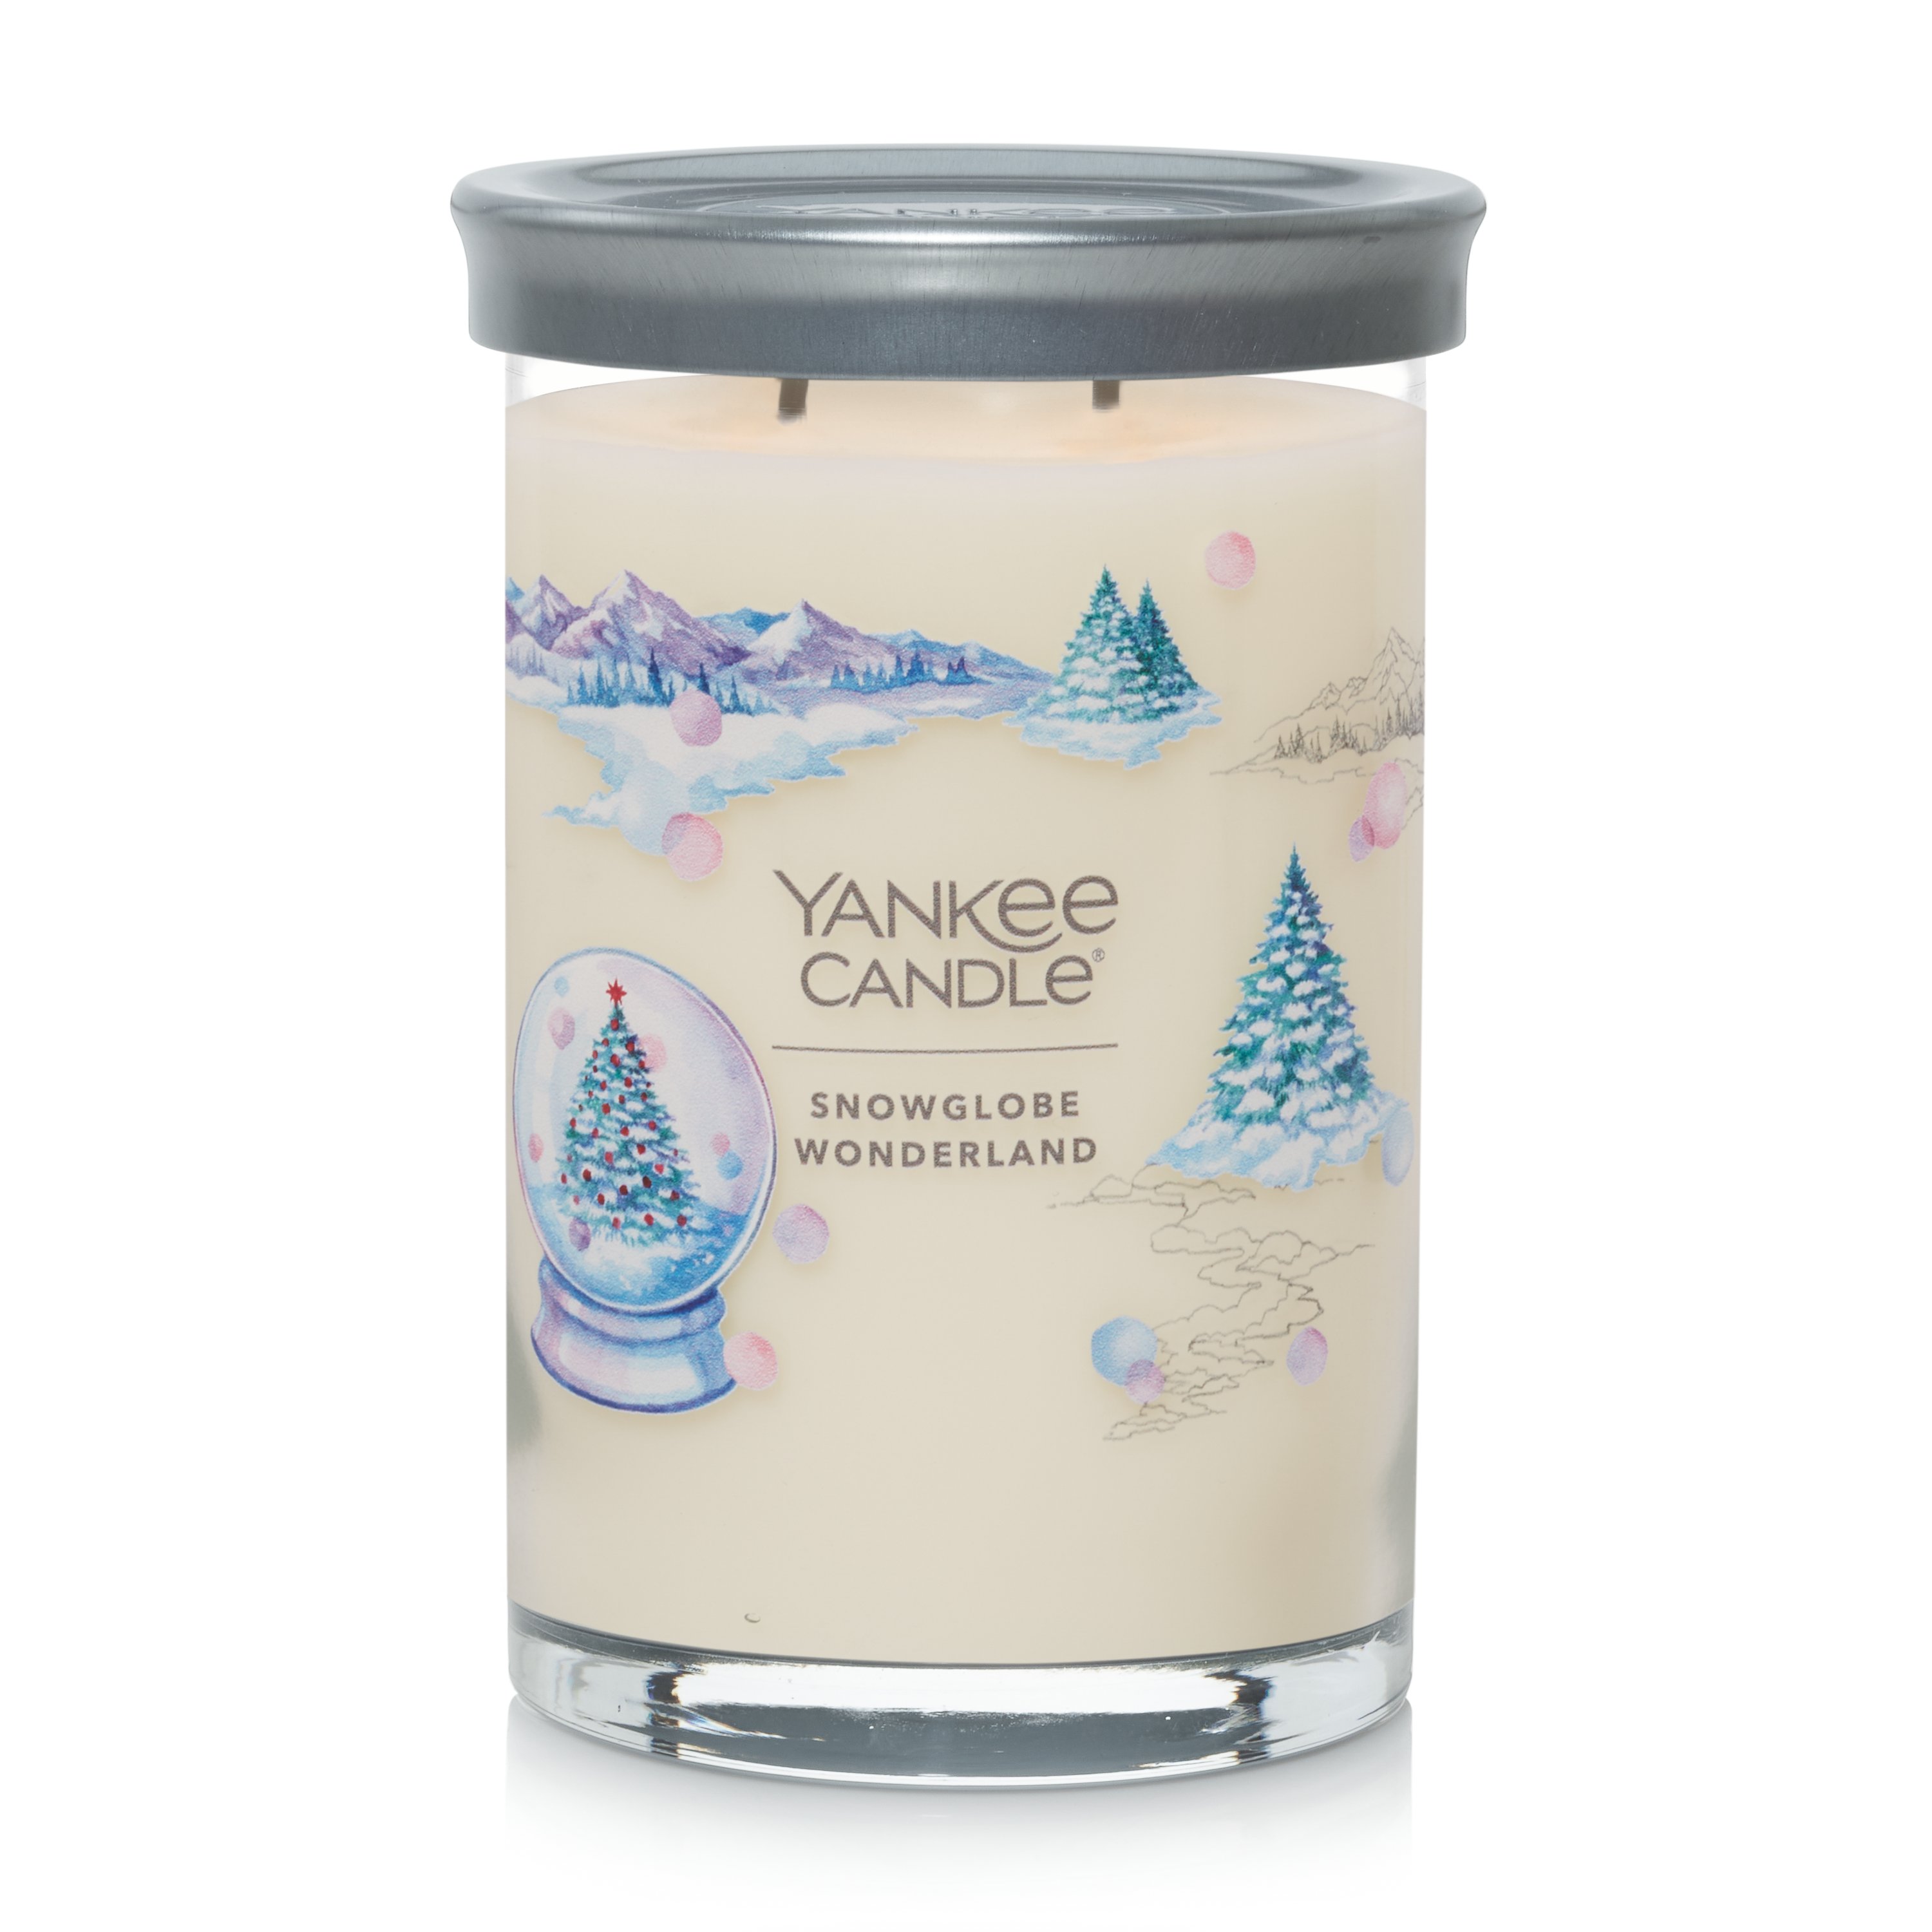 Yankee Candle Snow Globe Wonderland 6 Votives Candle - Set of 6 Mini Candles